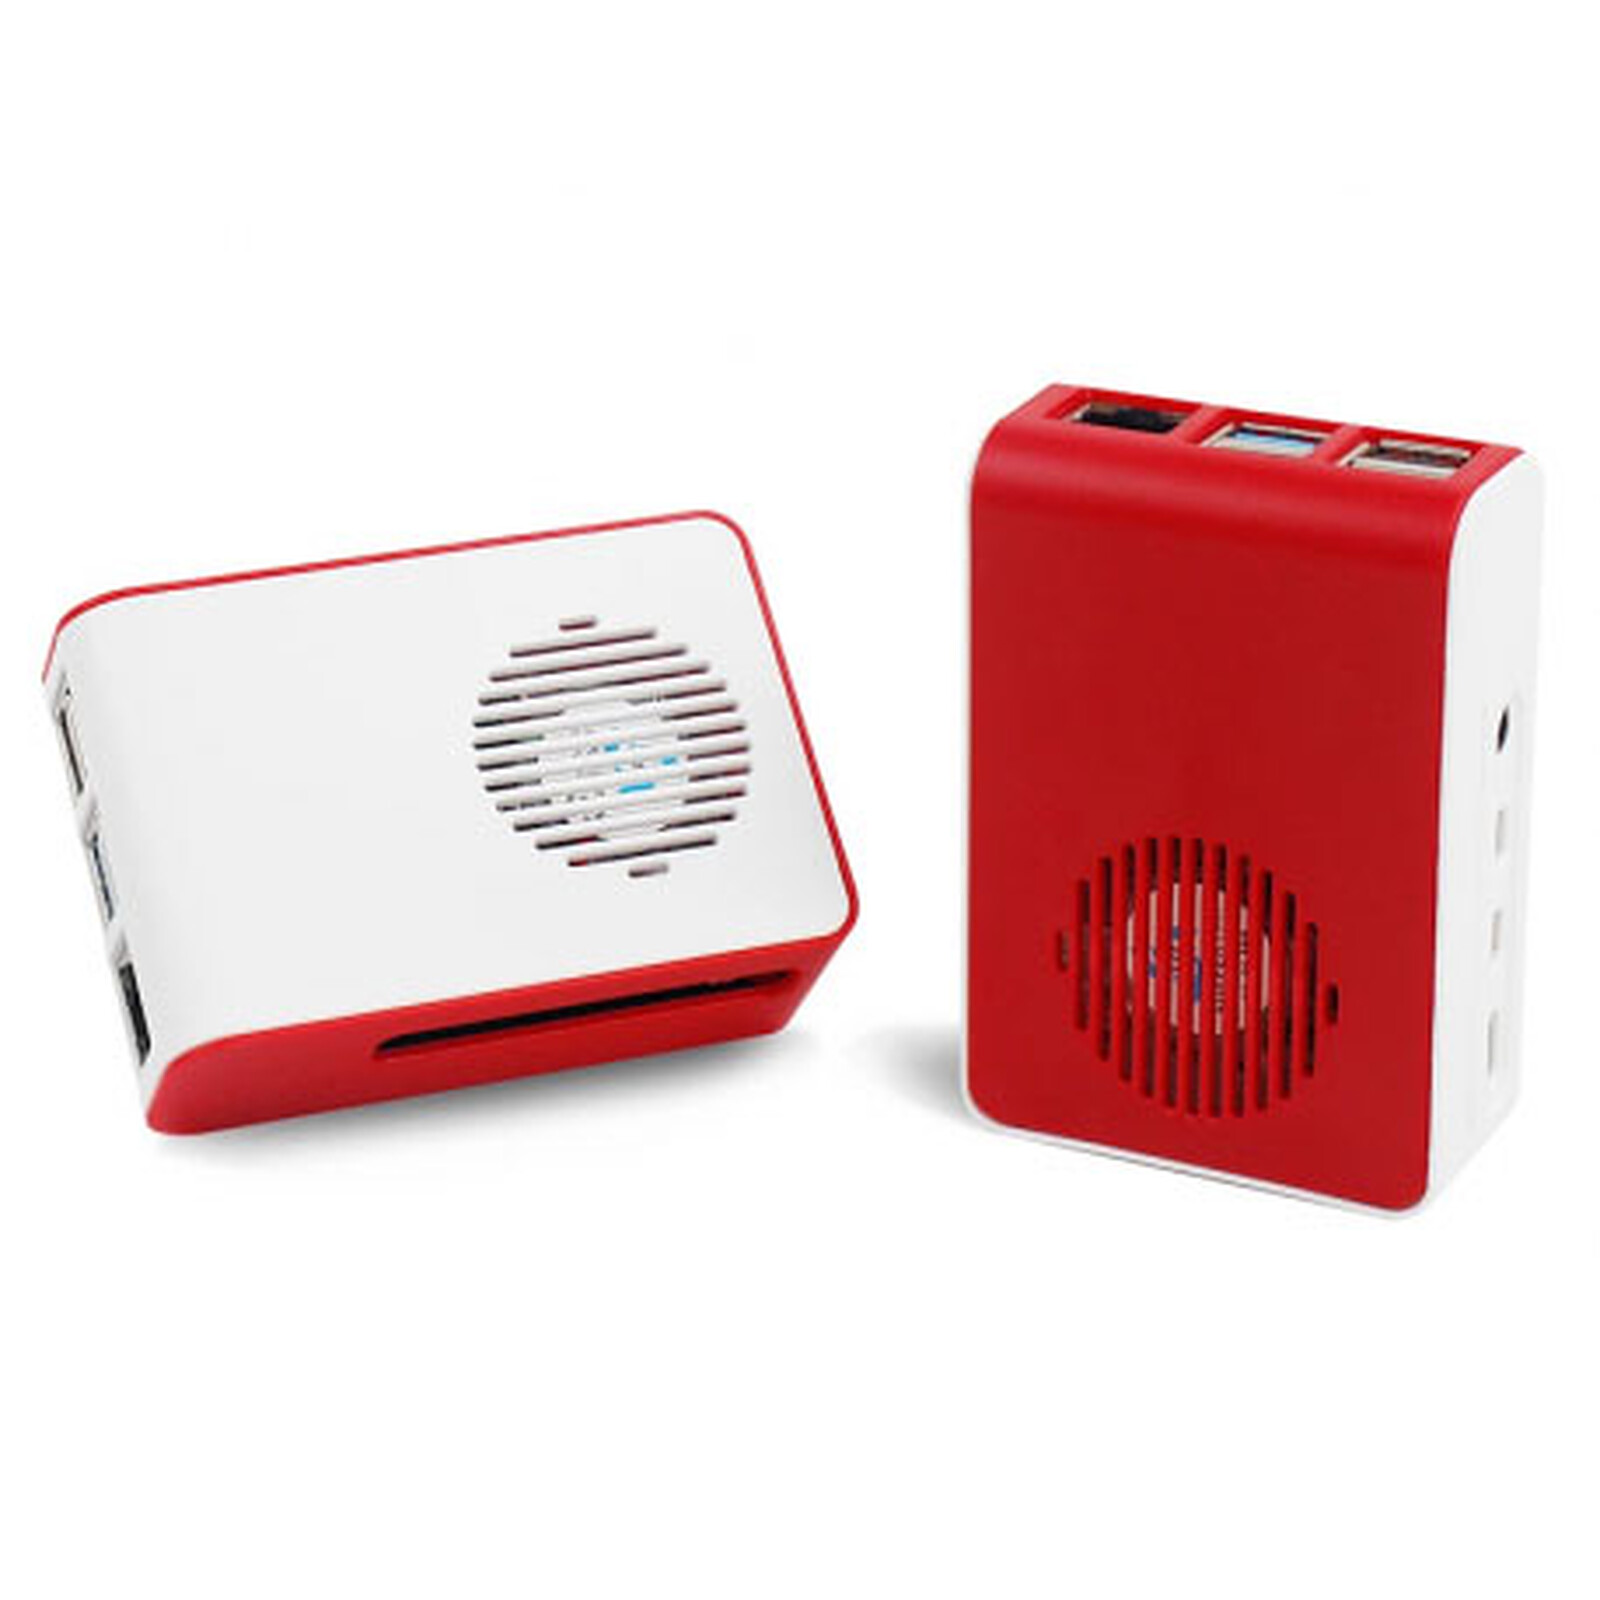 Boitier pour Raspberry Pi 4 Model B (Rouge/Blanc) avec ventilateur